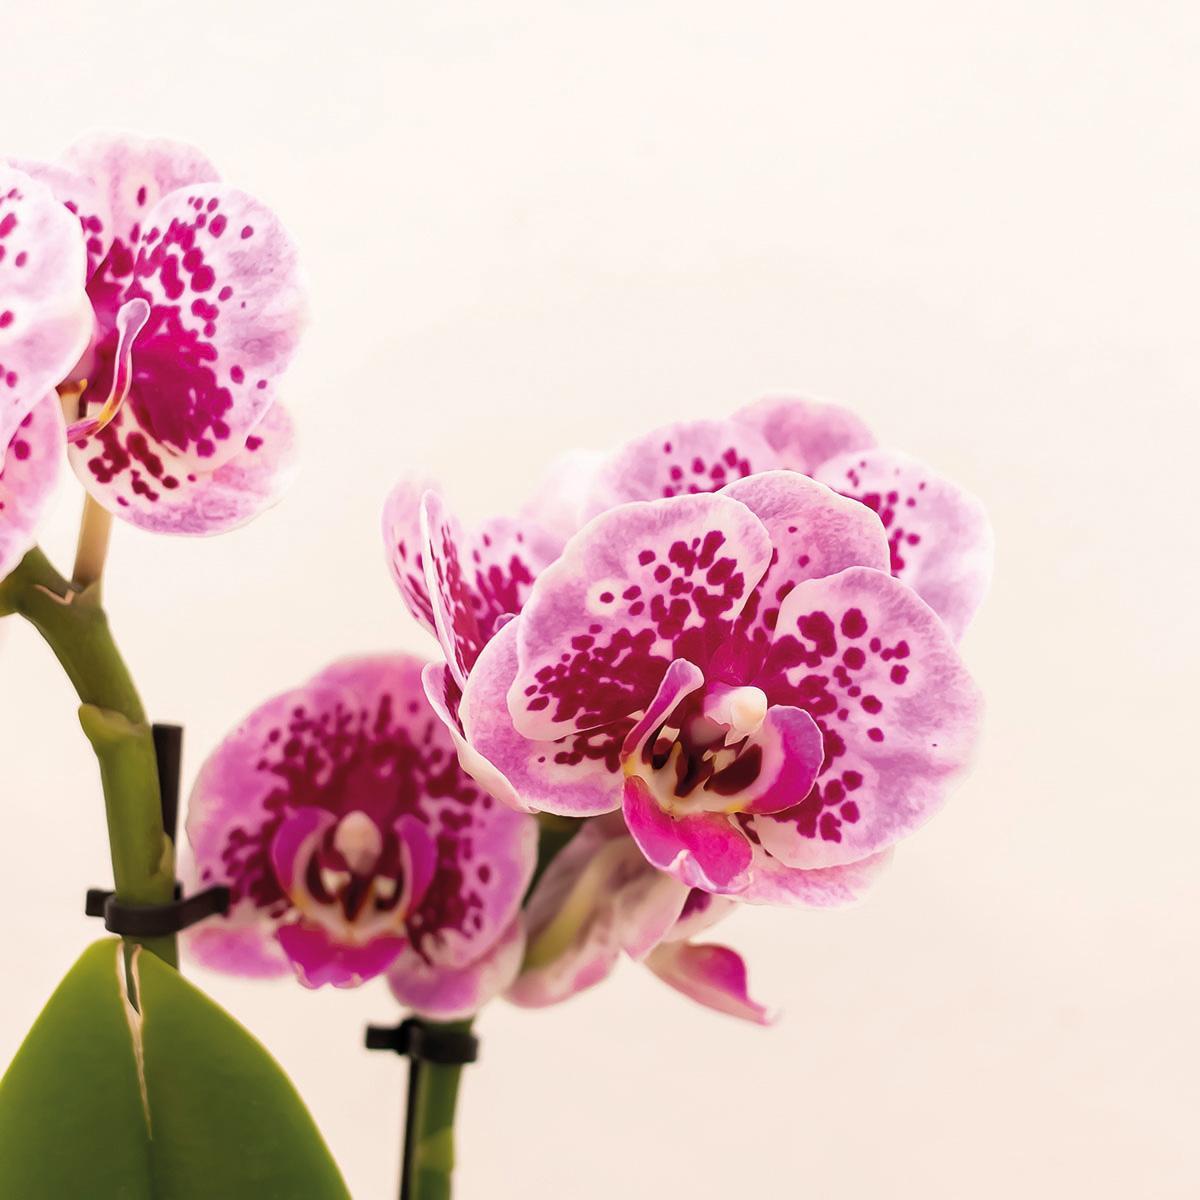 Lilla pink Phalaenopsis orkidé og dens guldplanteplante - h35cm, Ø9cm - blomstrende stueplante